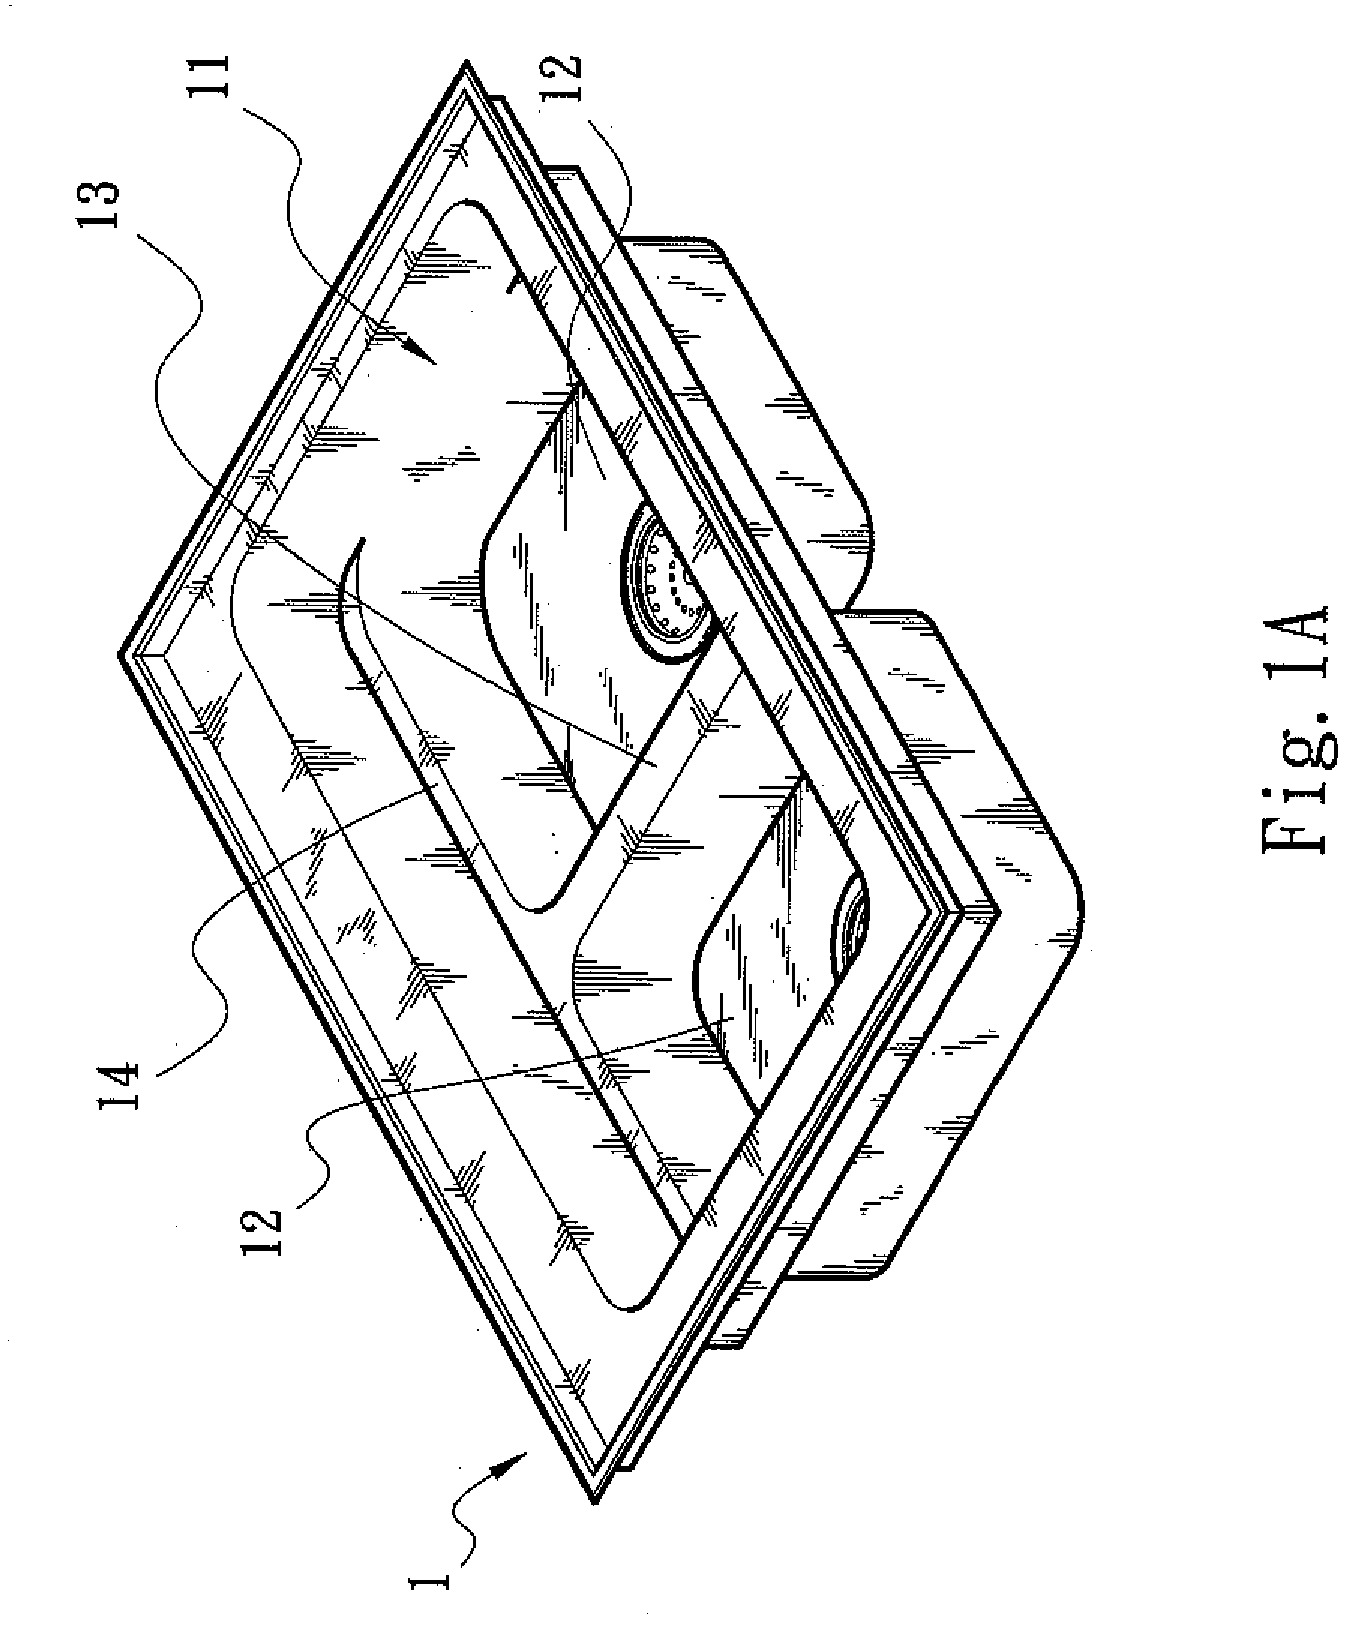 Multi-basin sink